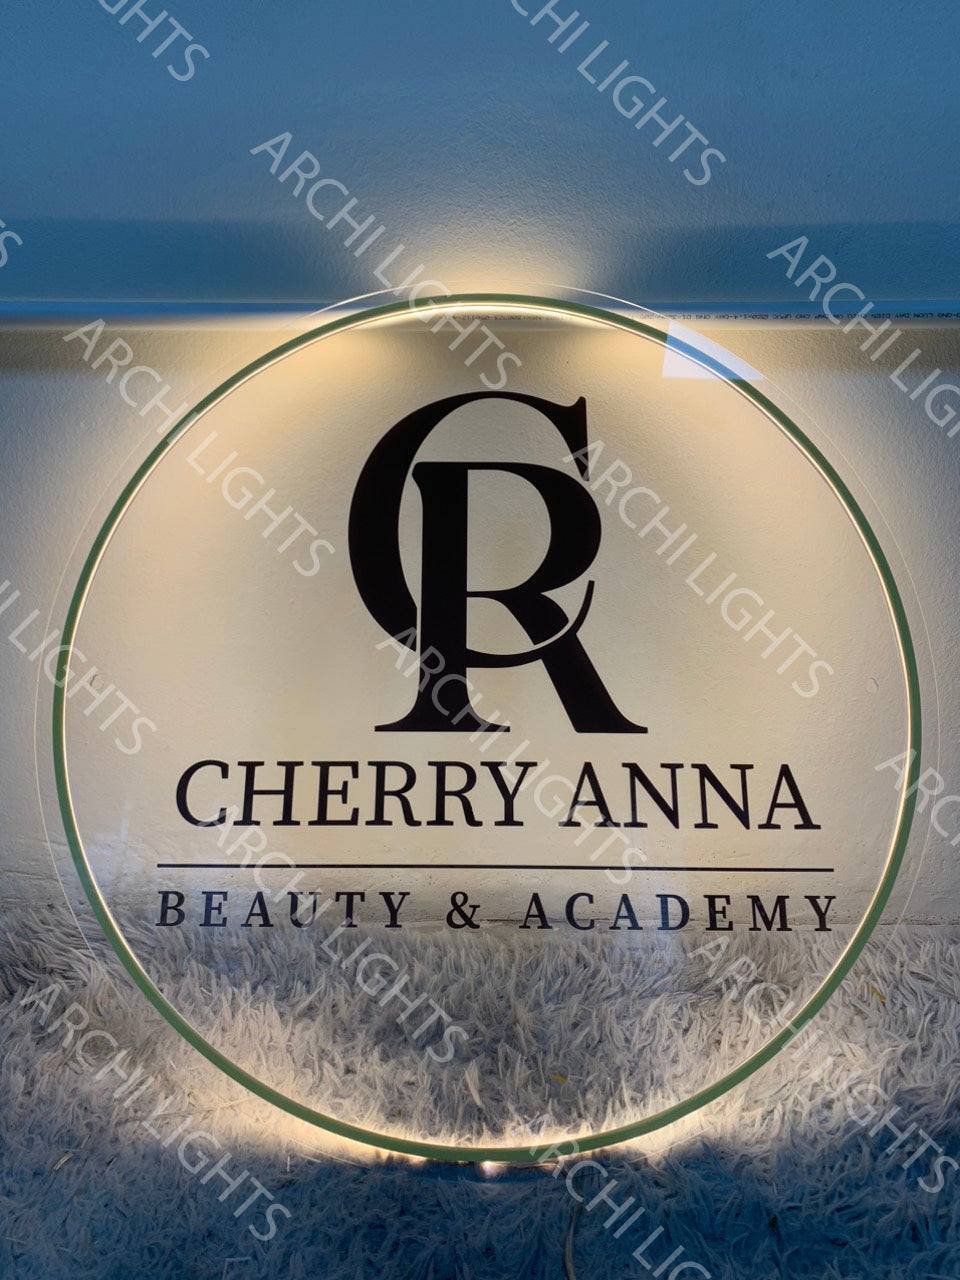 Cherry Anna - アクリルサイン 80cm | 31.4インチ